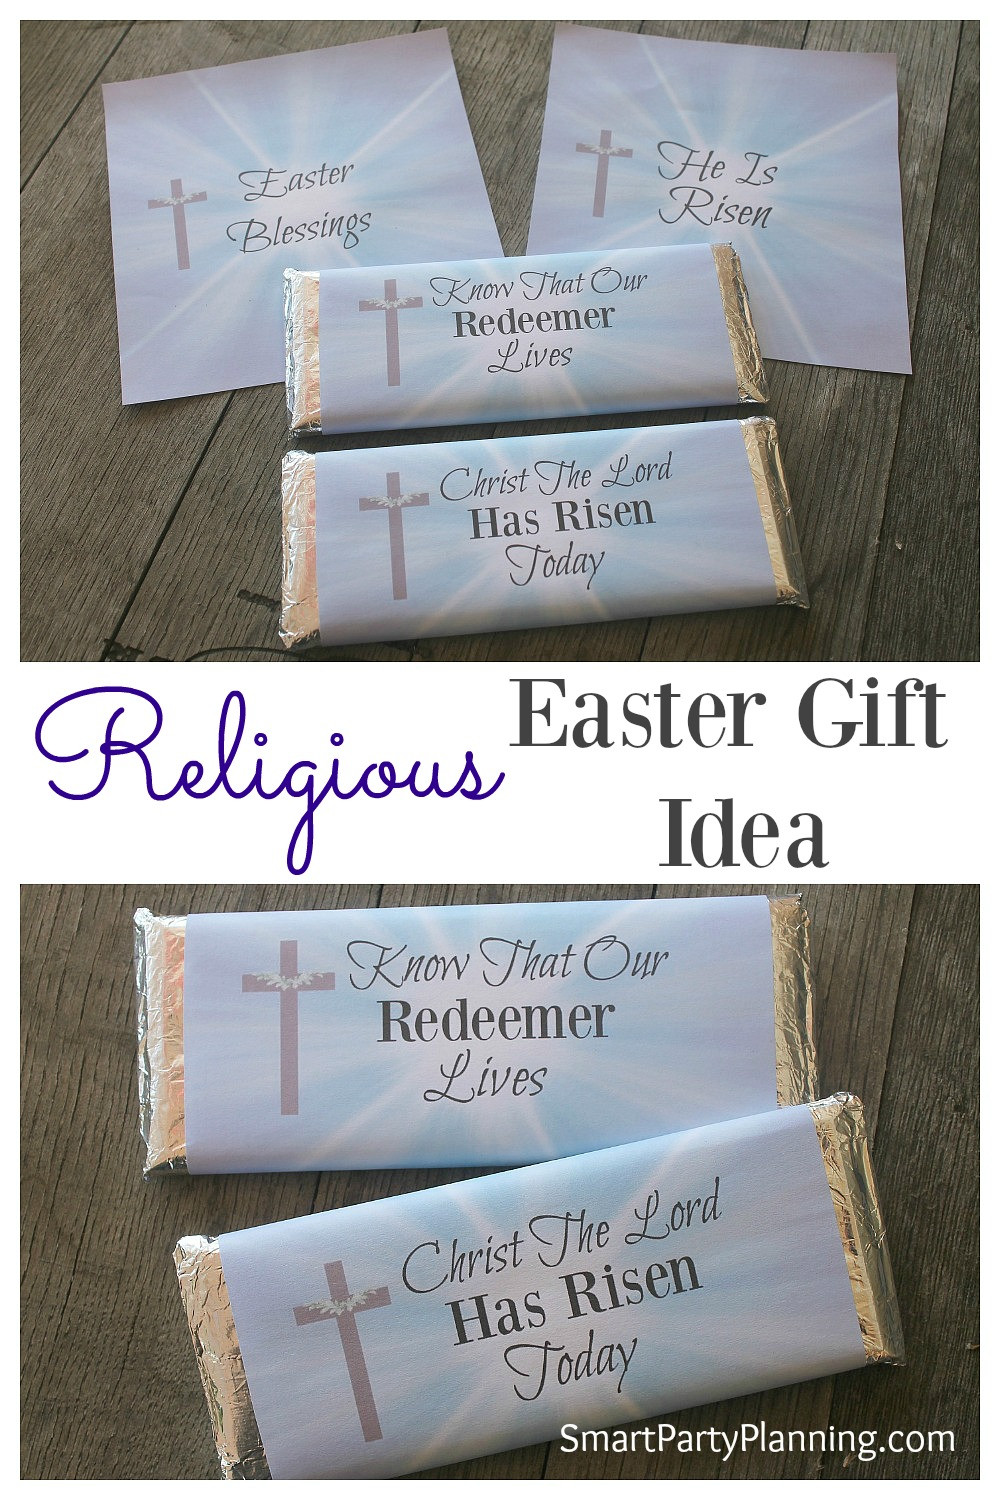 Religious Easter Gifts
 Religious Easter Gift Idea